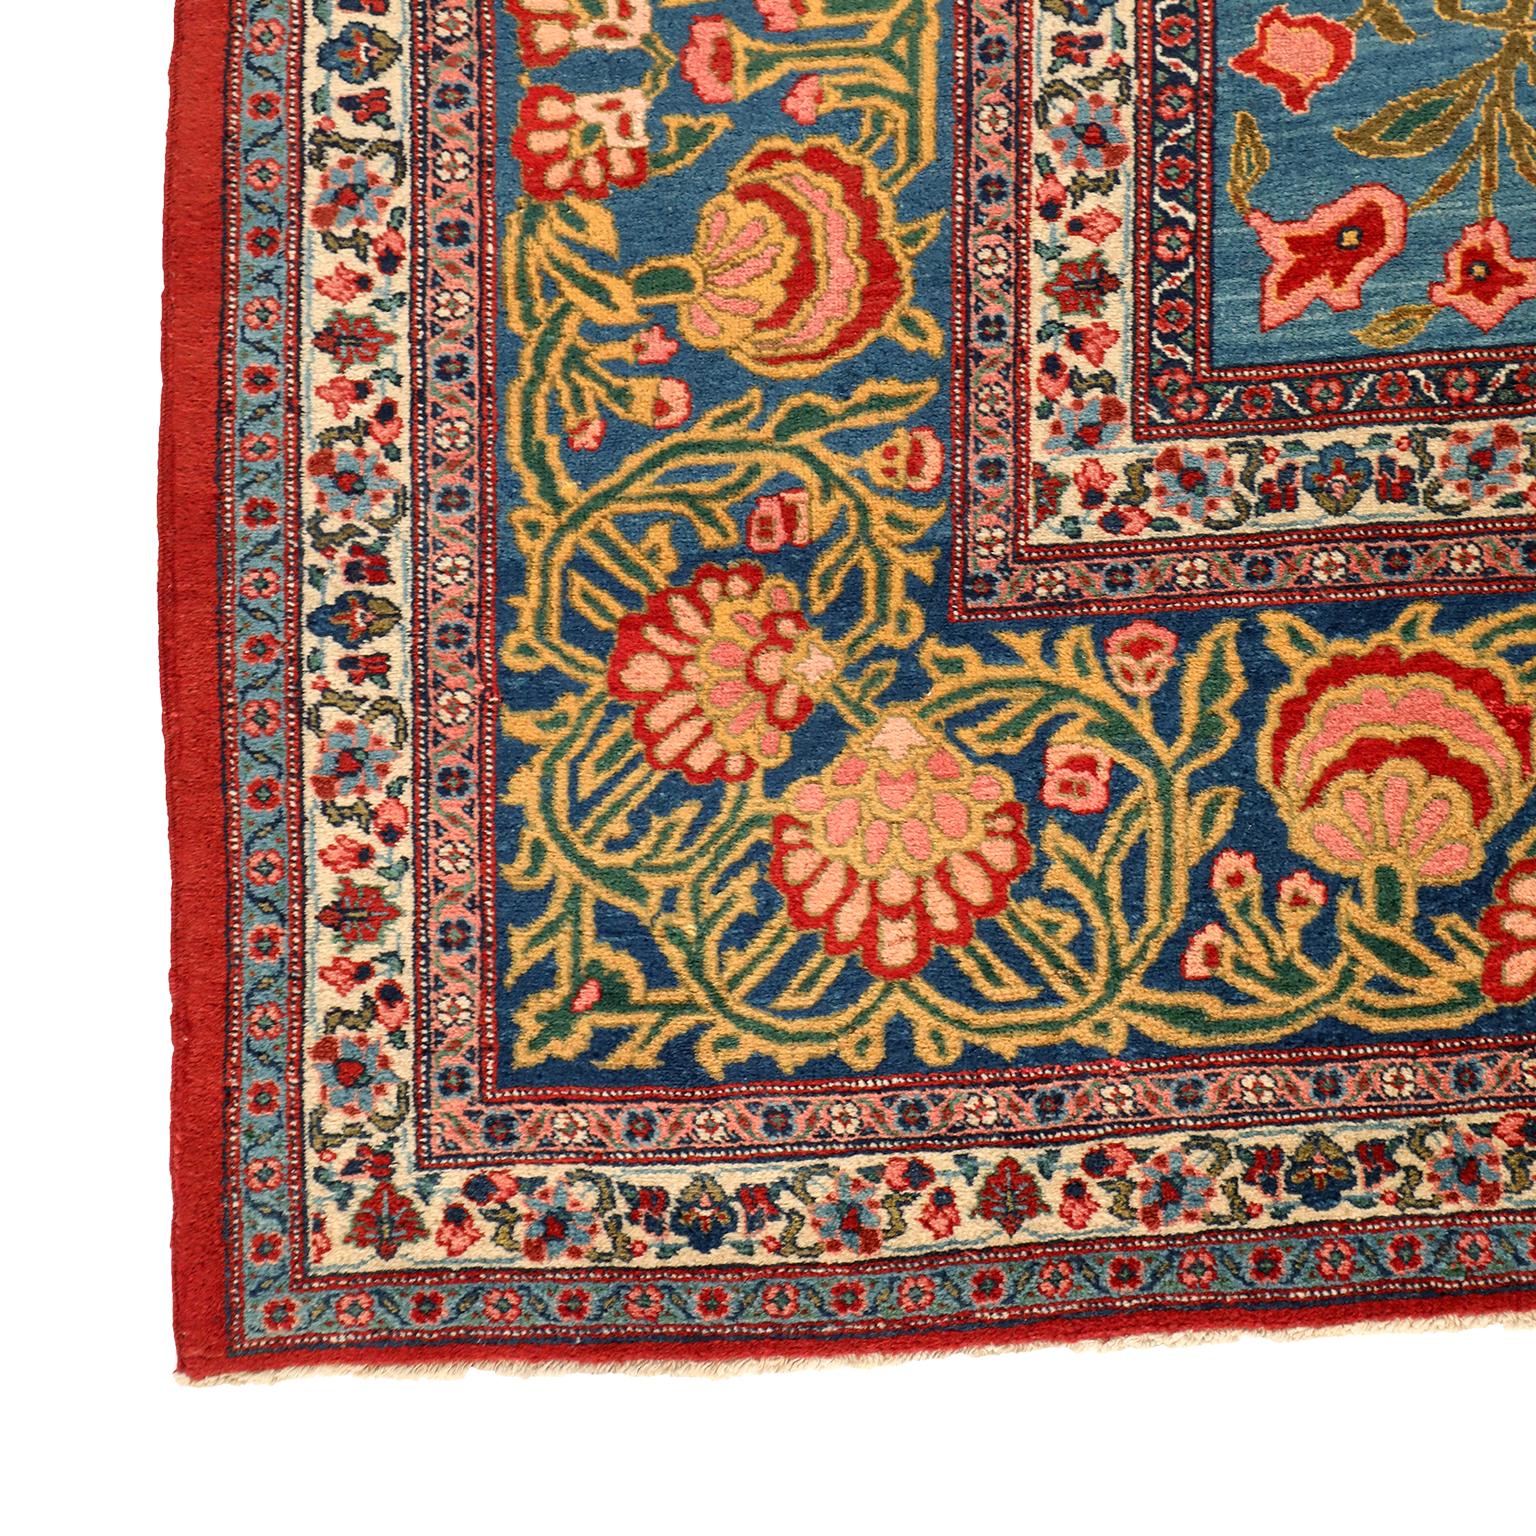 Dieser antike Khoy-Perserteppich in Blau, Rot und Grün um 1920 ist 13' x 20' groß und weist ein geschwungenes zentrales Medaillon und eine komplizierte, mehrbändige Bordüre auf. Dieser Teppich wurde im Auftrag von Reza Schah in der Werkstatt des